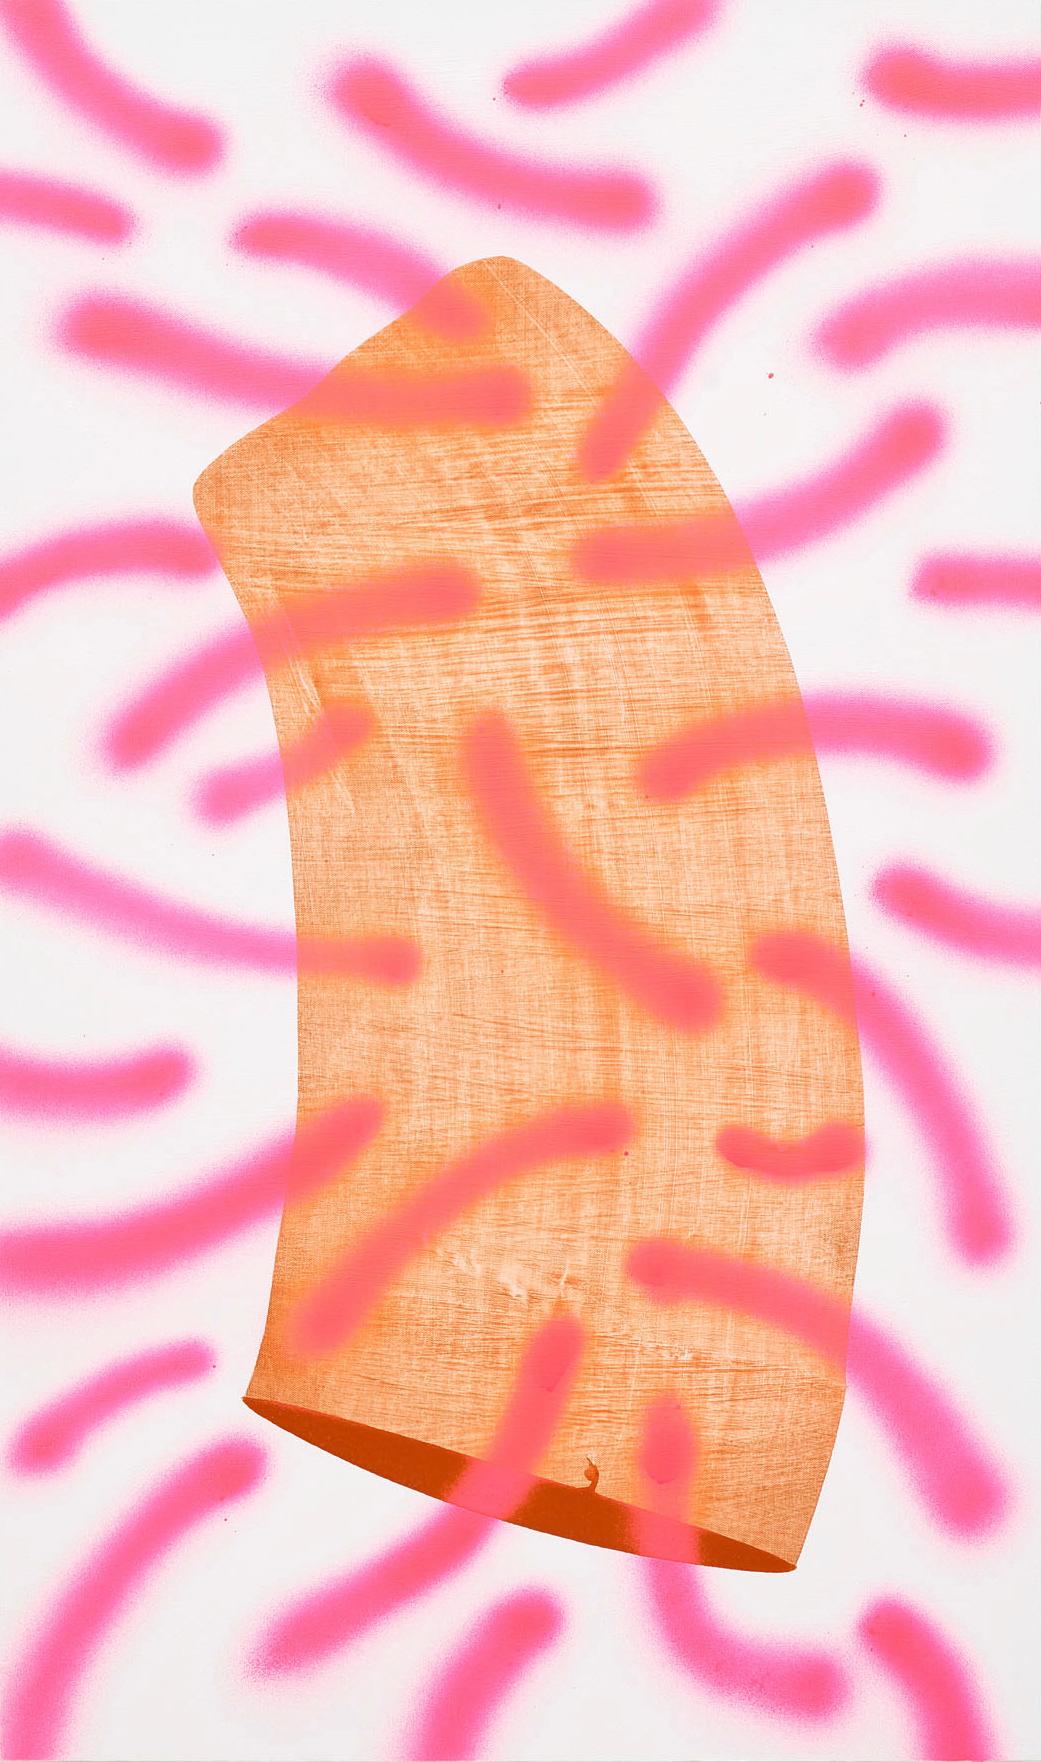 "Sexual Pleasure", acrylique abstraite contemporaine rose vif et orange et peinture en aérosol.